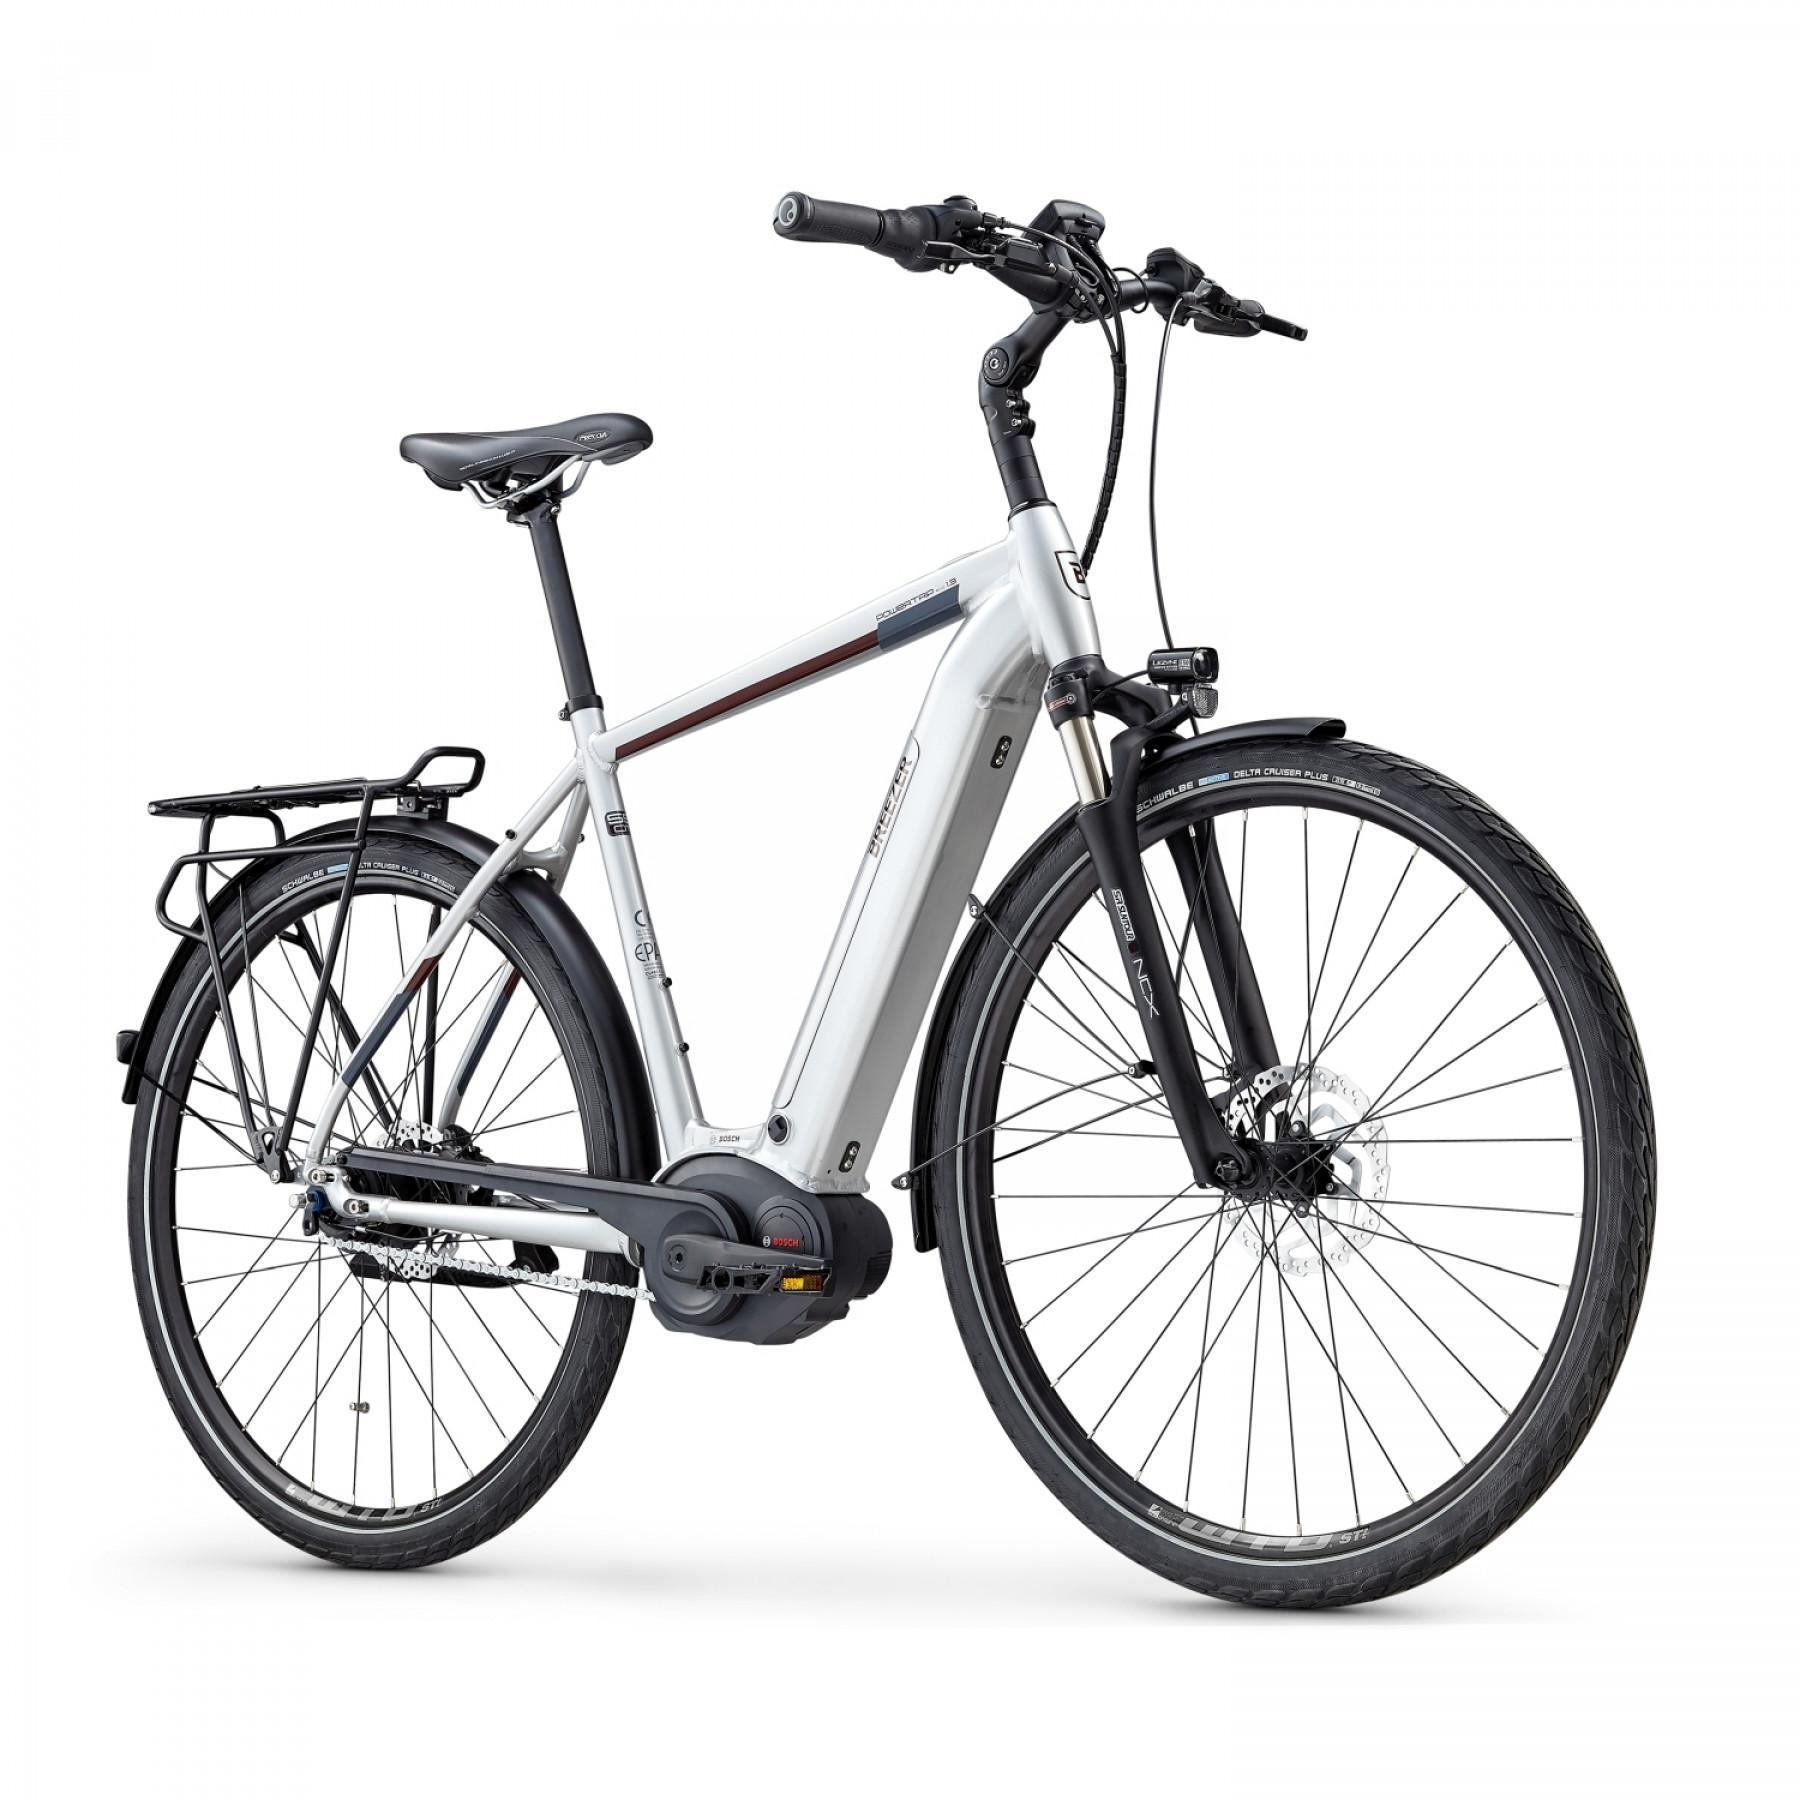 Bicicleta eléctrica Breezer Powertrip Evo IG 1.3+ 2019